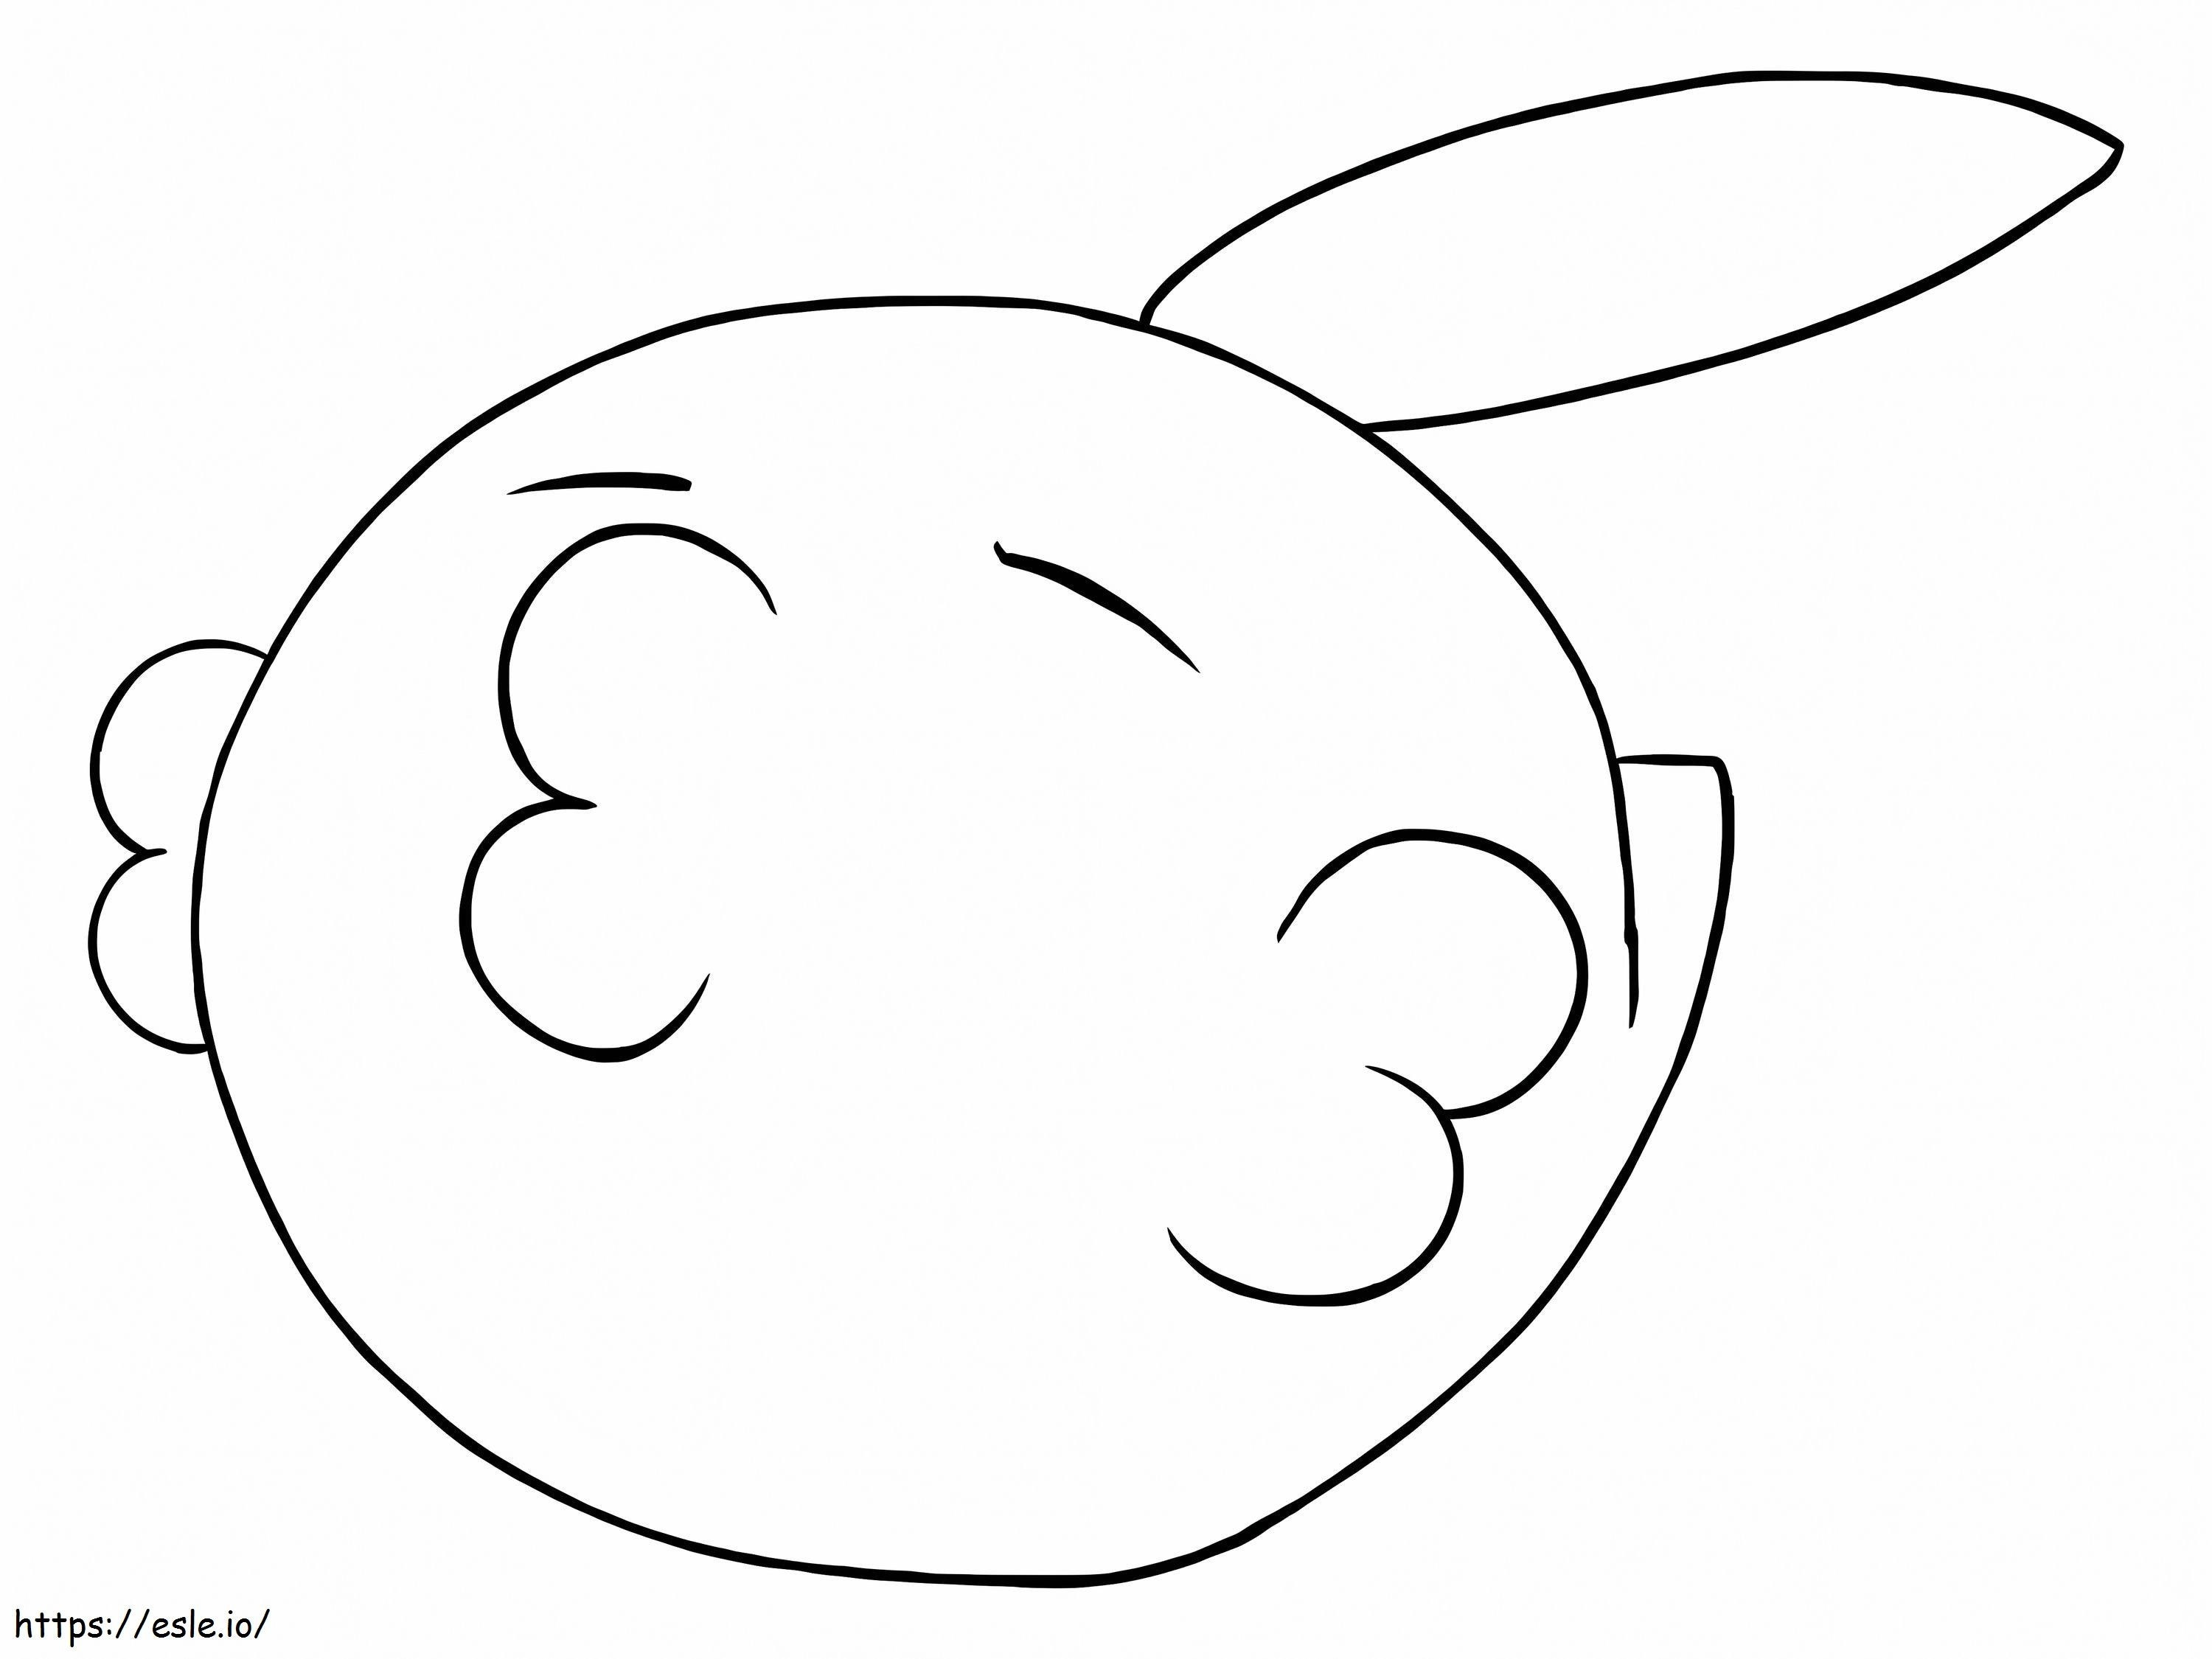 Coloriage Gulpin, pas Pokémon à imprimer dessin